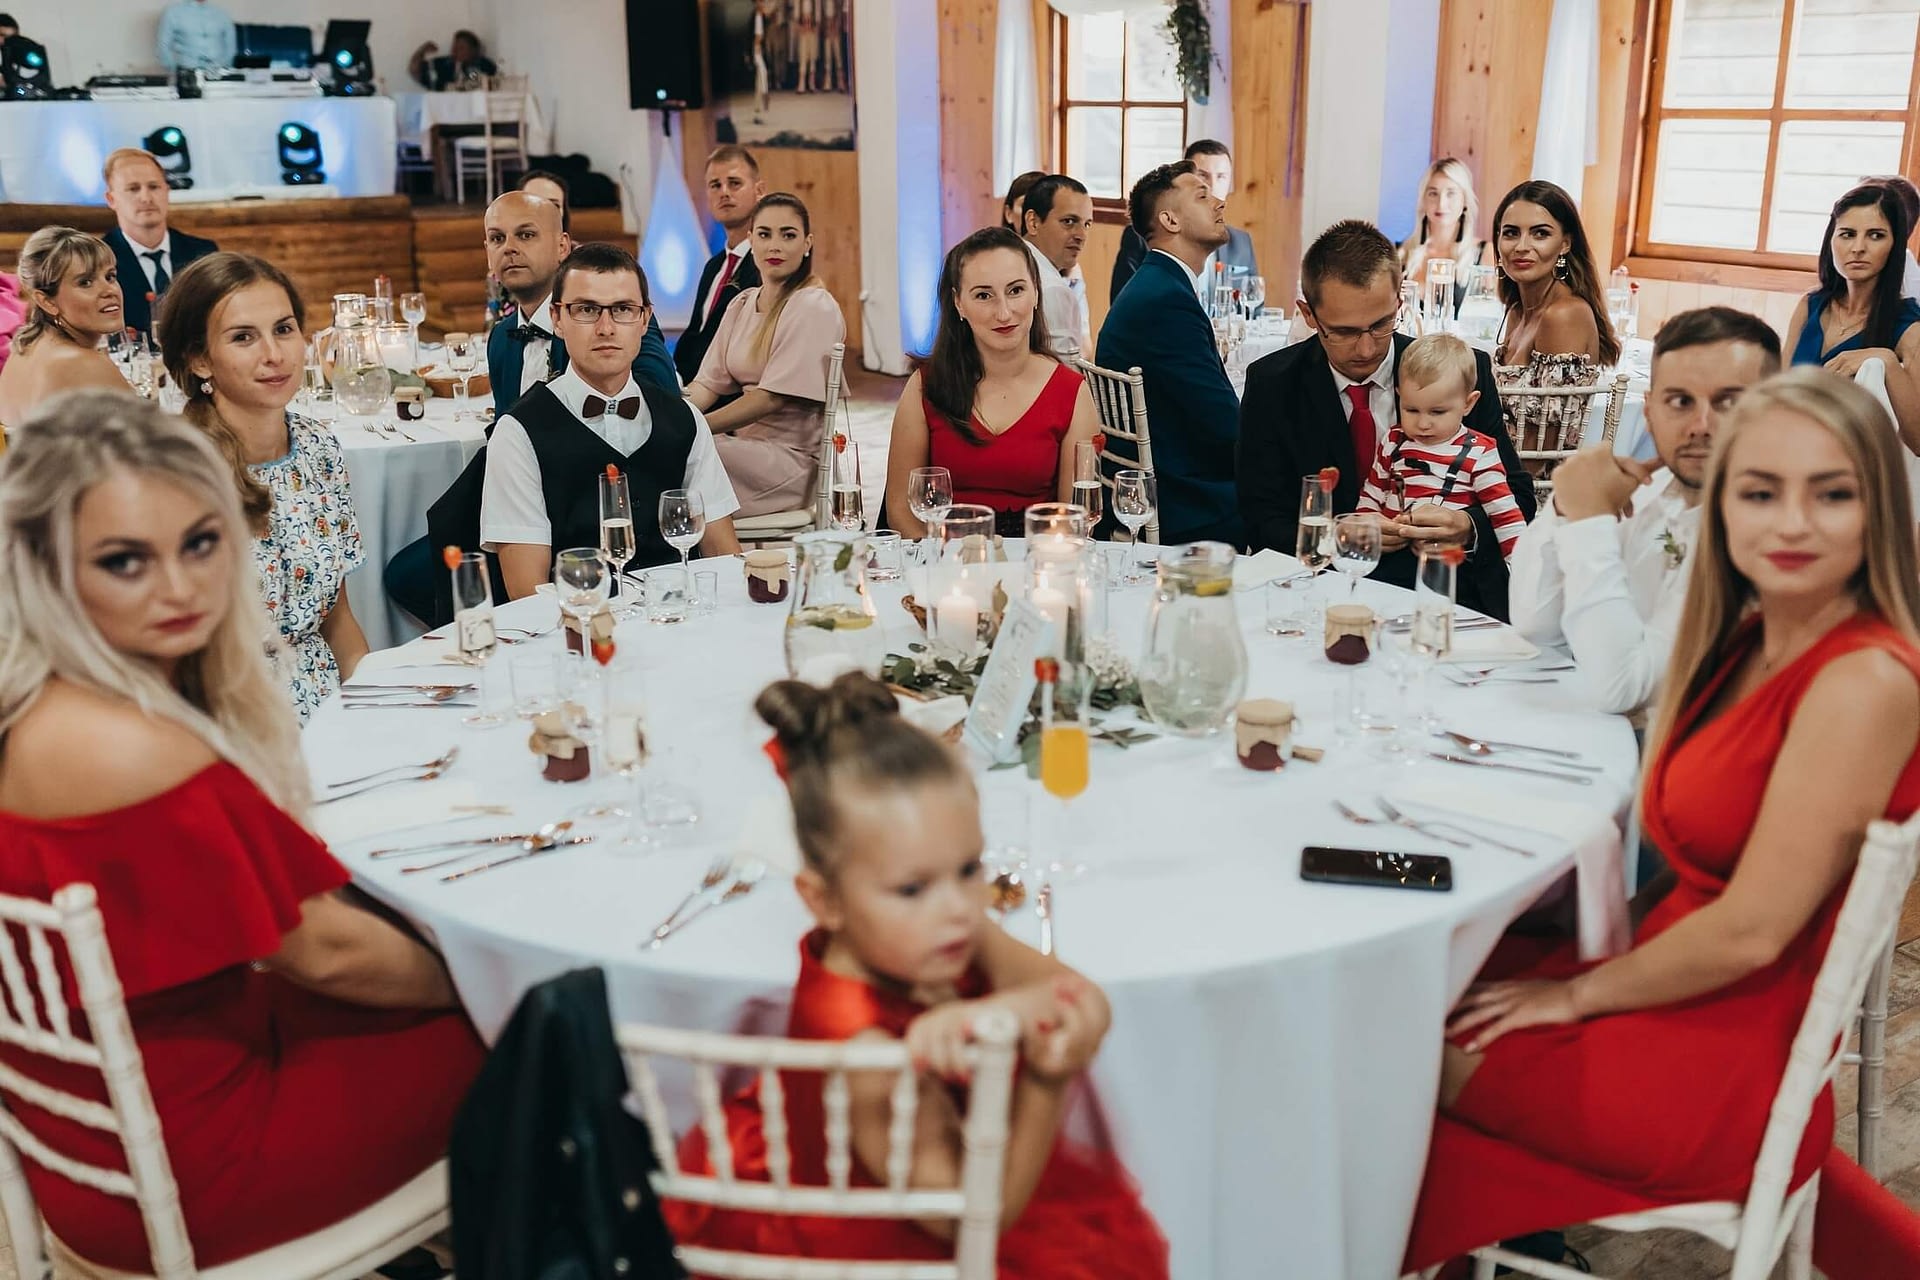 Svadobný fotograf Liptov - svadba pod Kriváňom